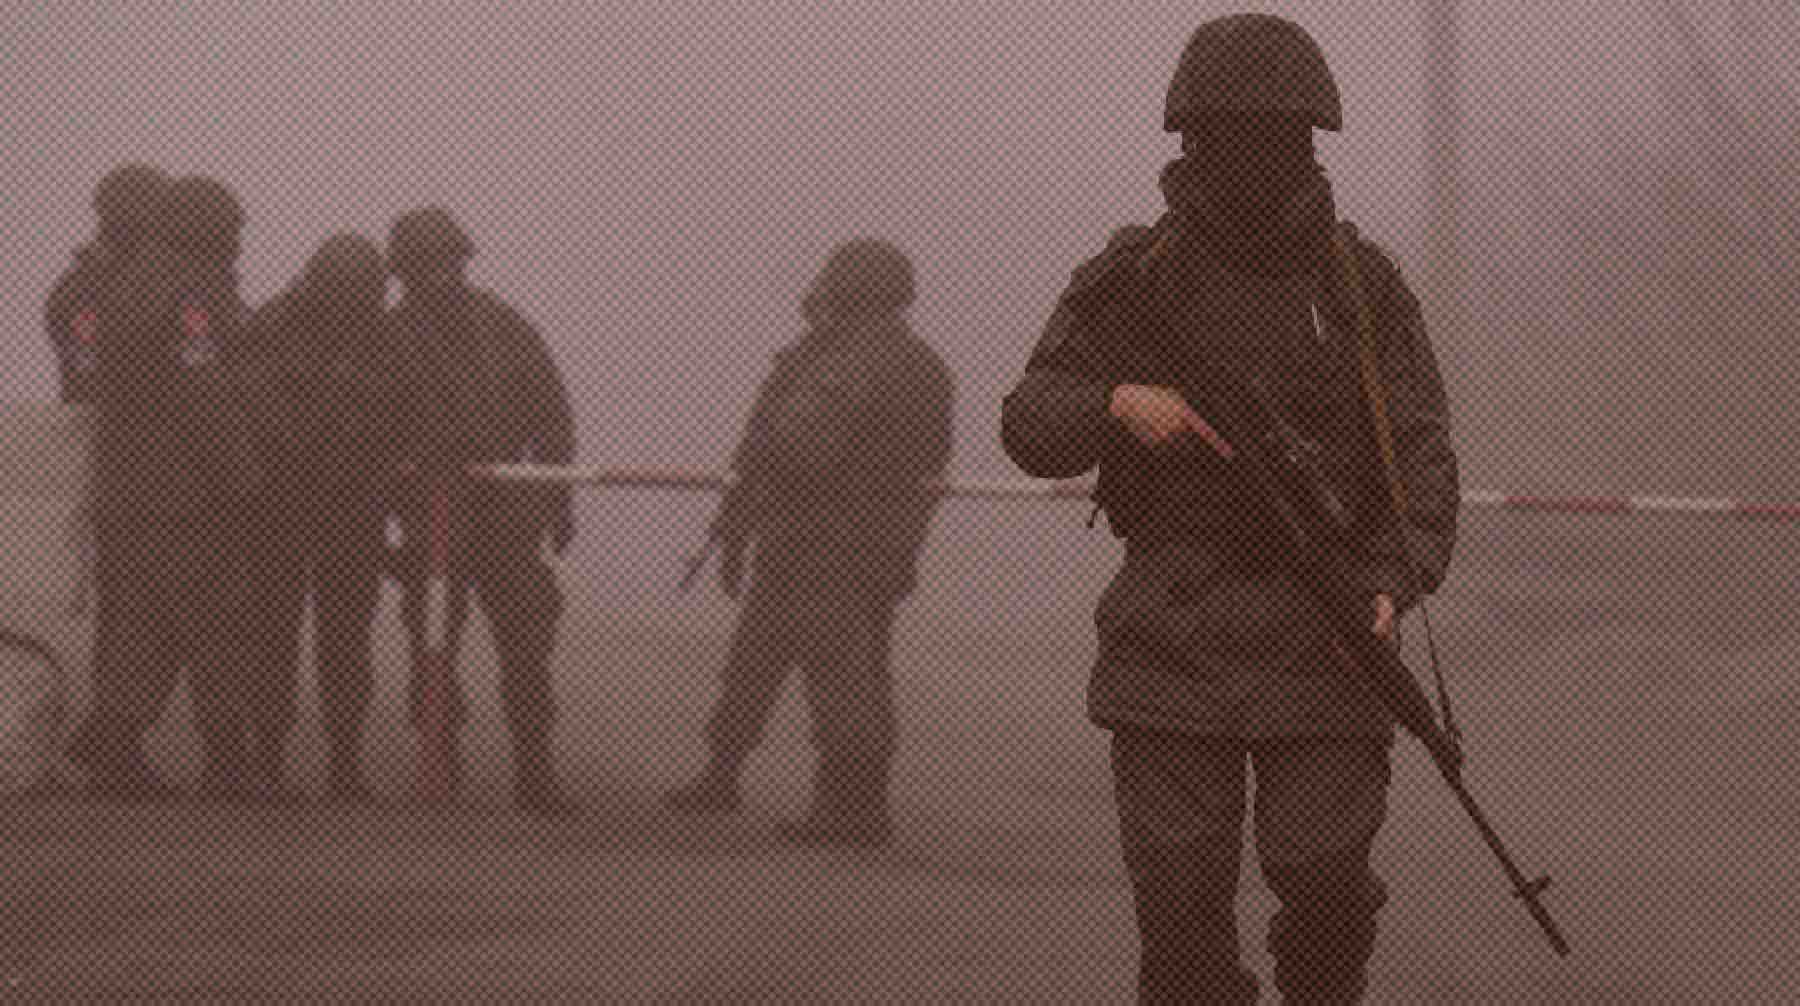 Dailystorm - Военные ДНР открыли ответный огонь по позициям украинских силовиков на границе Донбасса